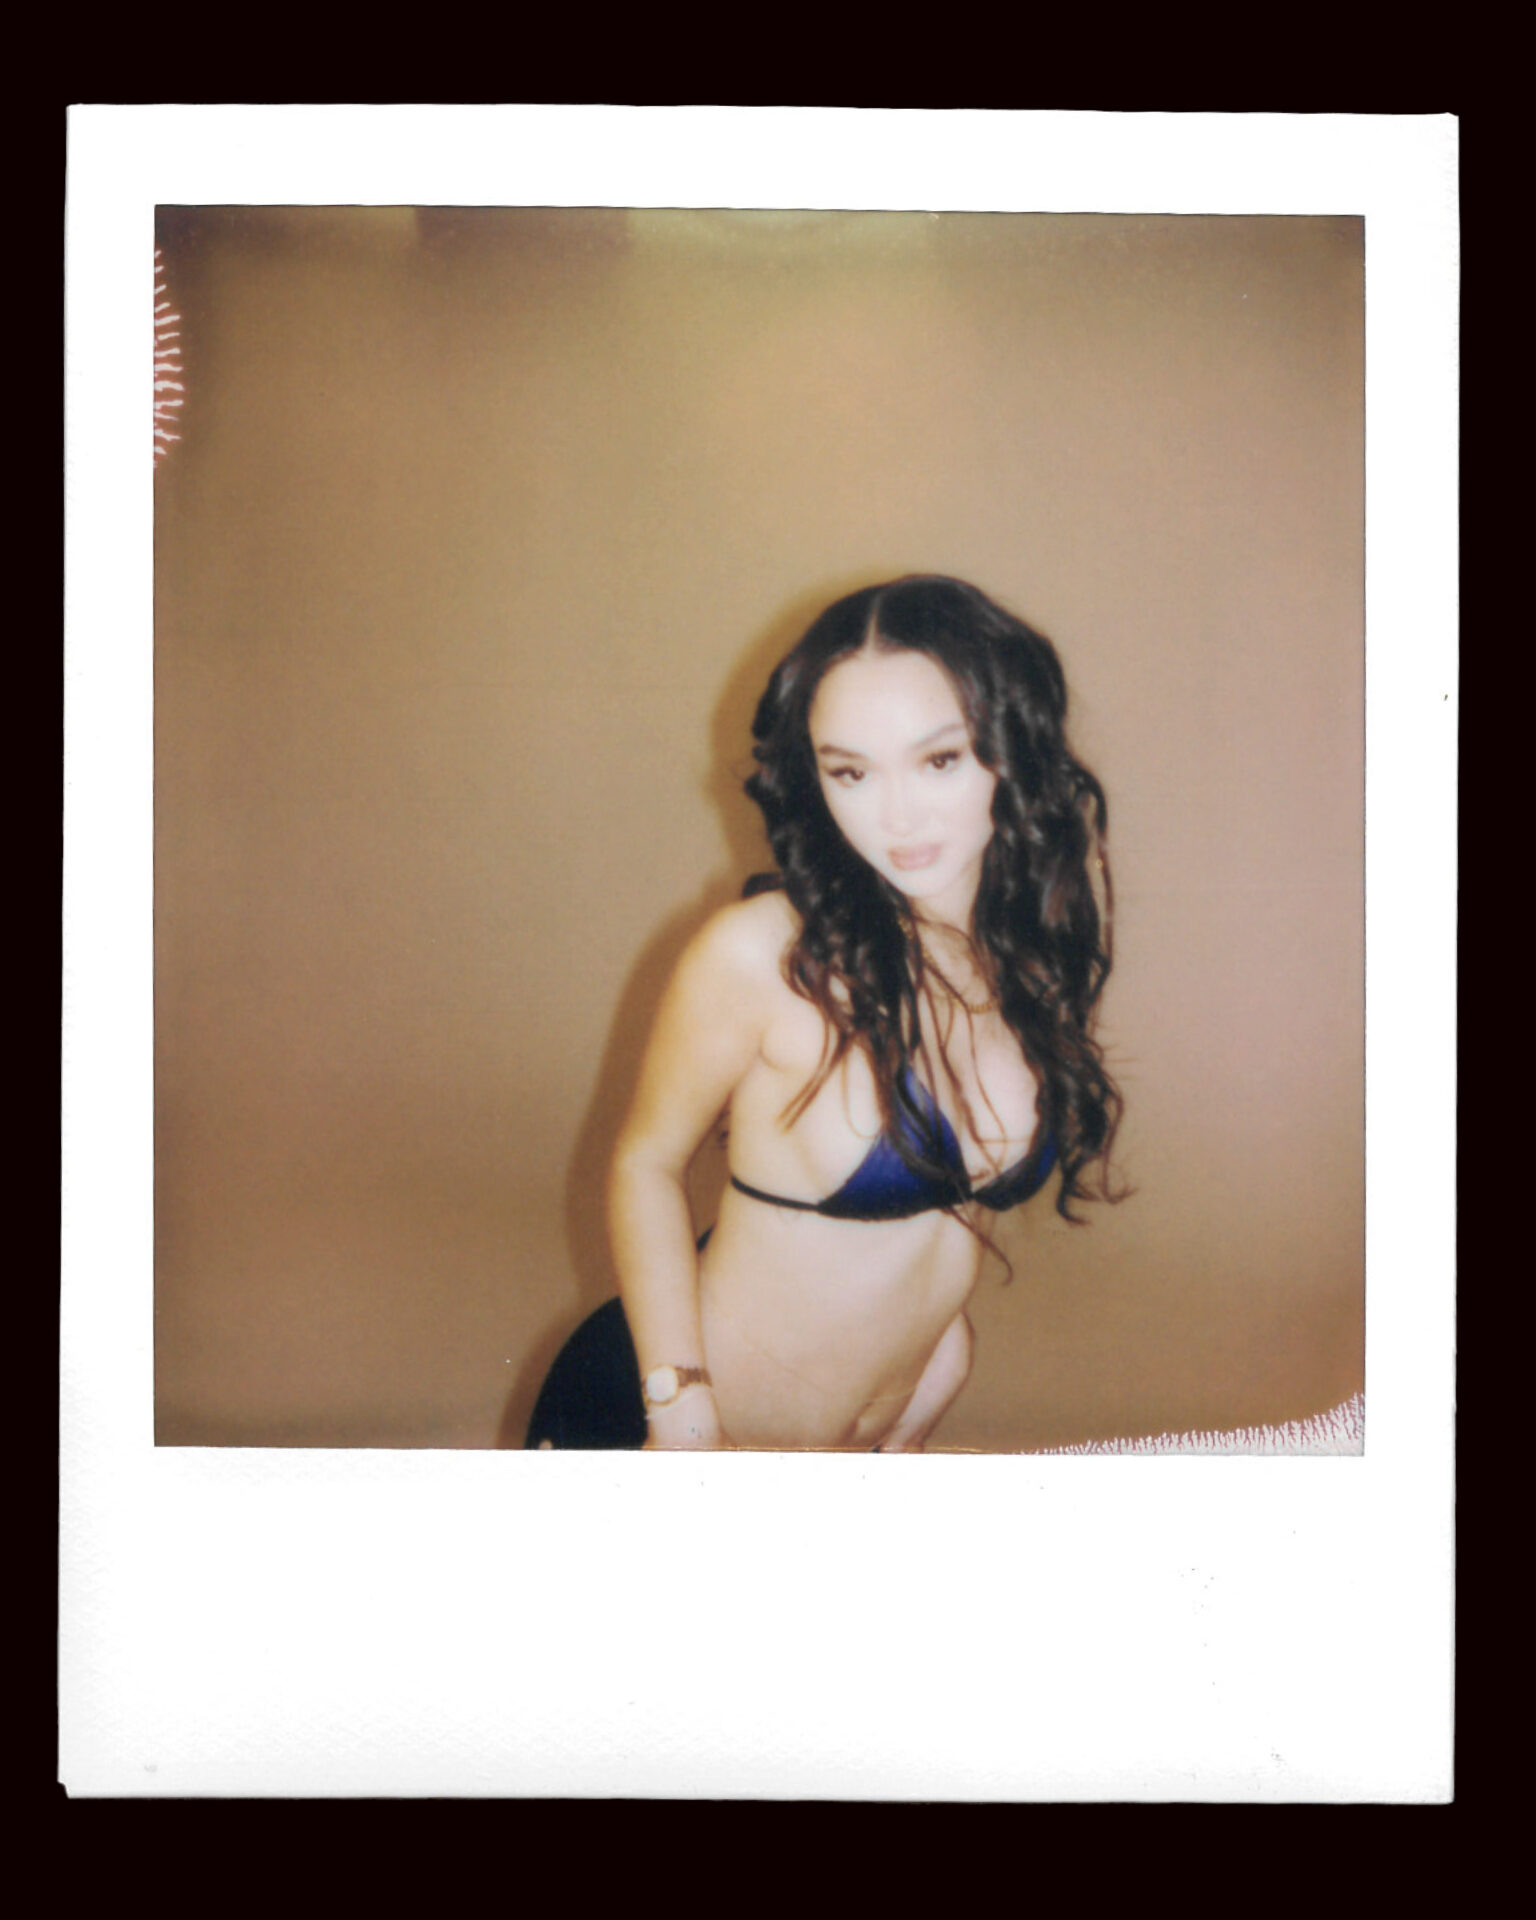 FLO's Stella Quaresma poses in a bikini top for a polaroid picture